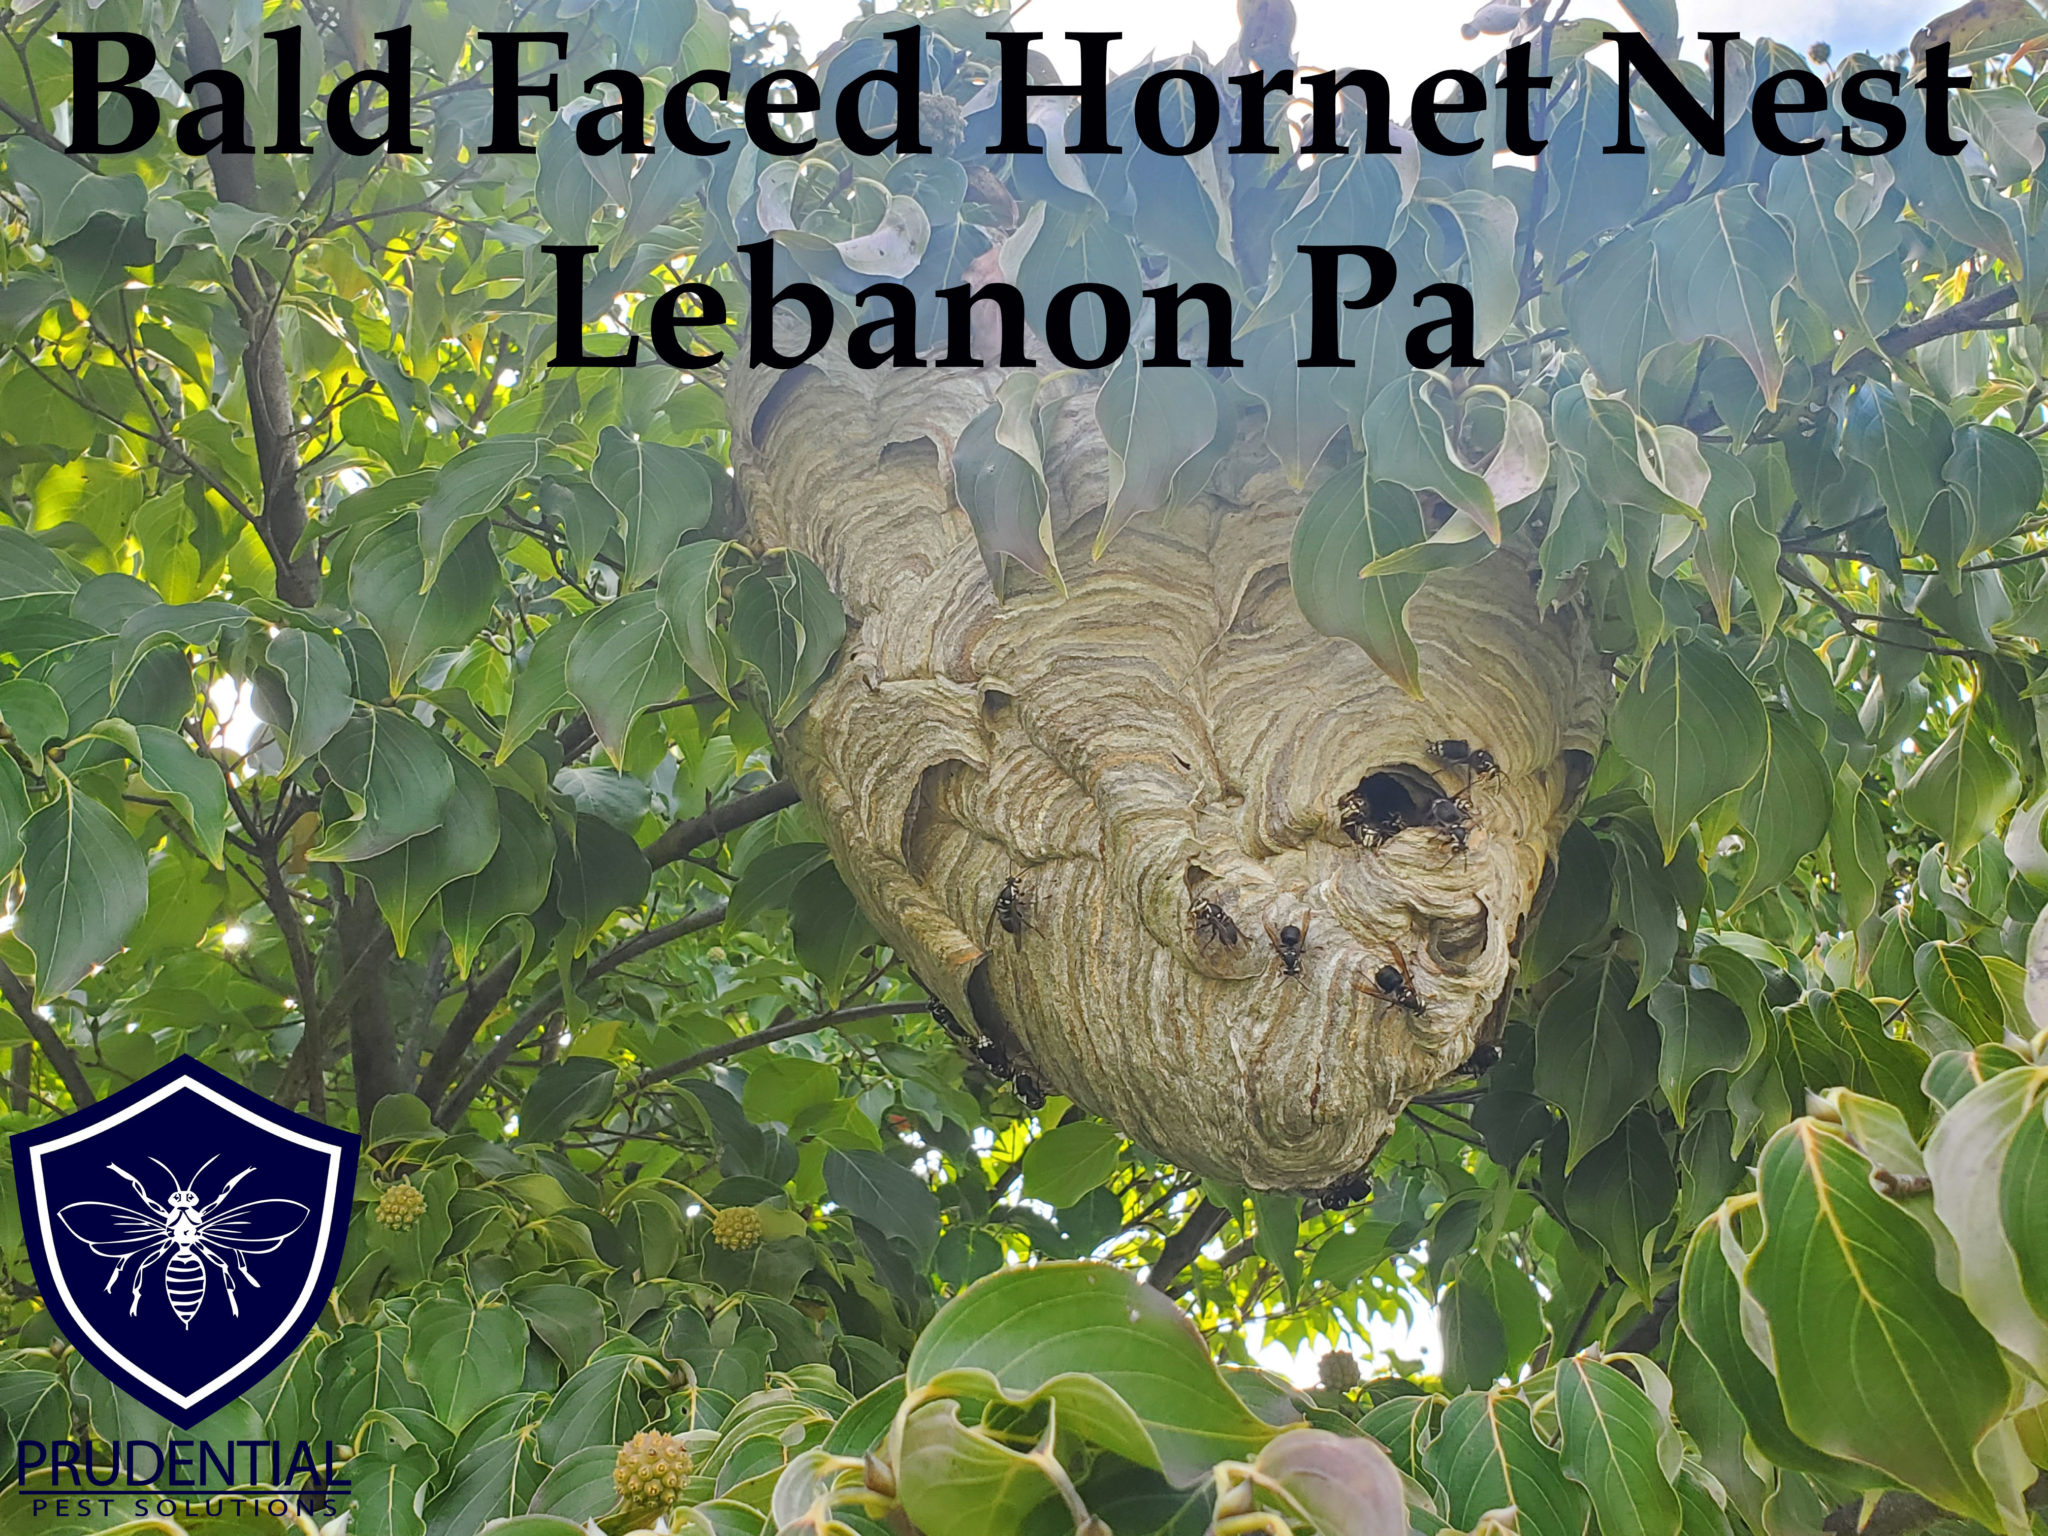 bald faced hornet nest Lebanon Pa